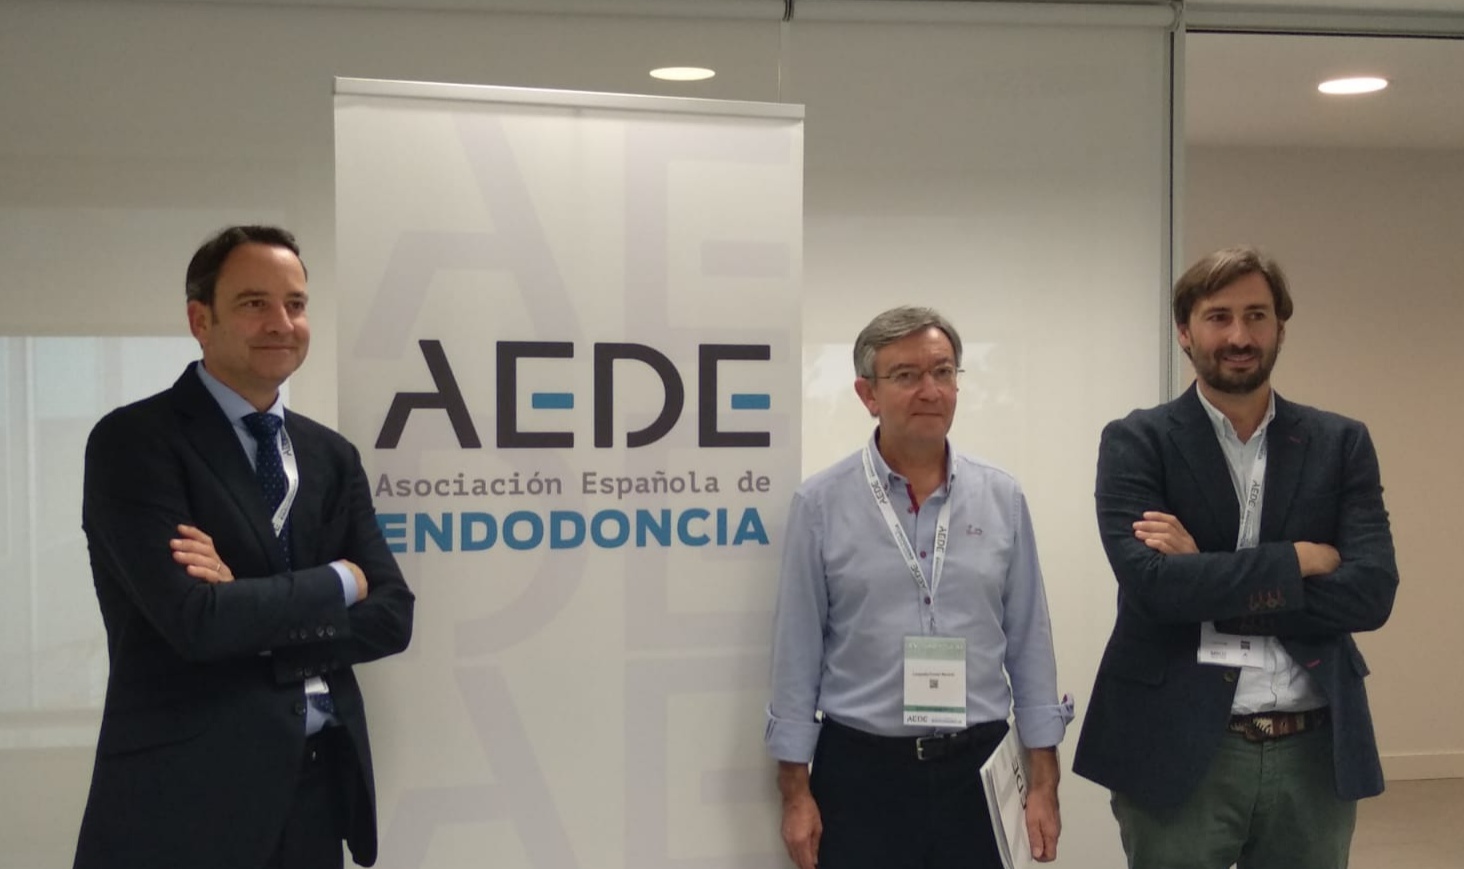 De izq. a dcha: El presidente de AEDE, Miguel Miñana; el presidente electo, Leopoldo Forner; y el secretario de AEDE, José Aranguren. FOTO: AEDE